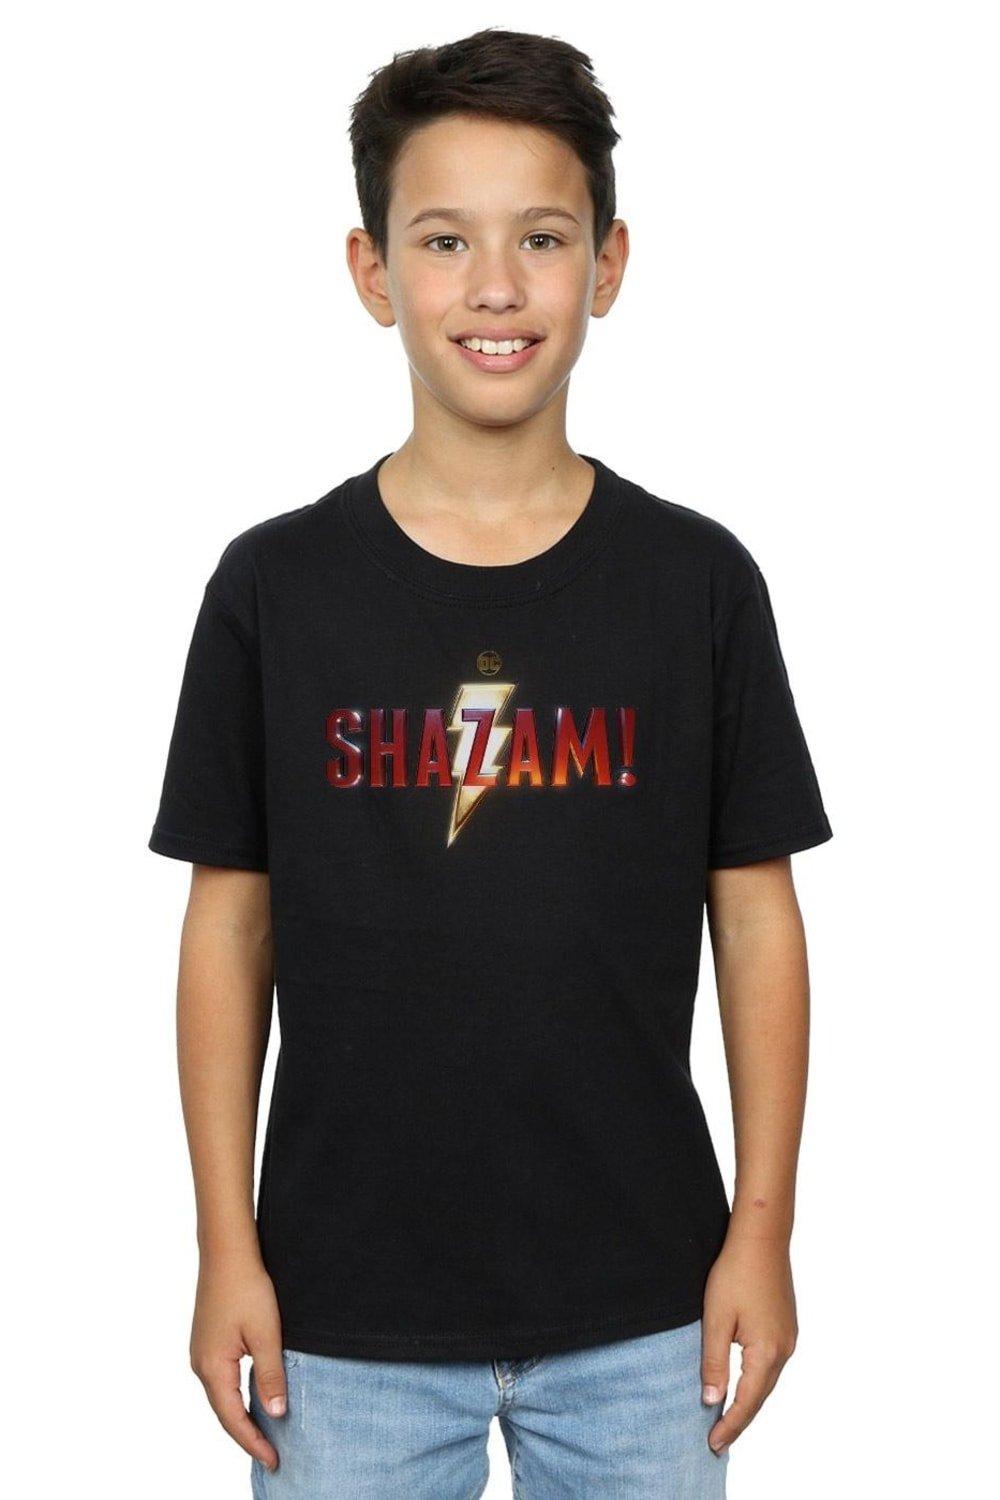 Shazam Movie Logo T-Shirt